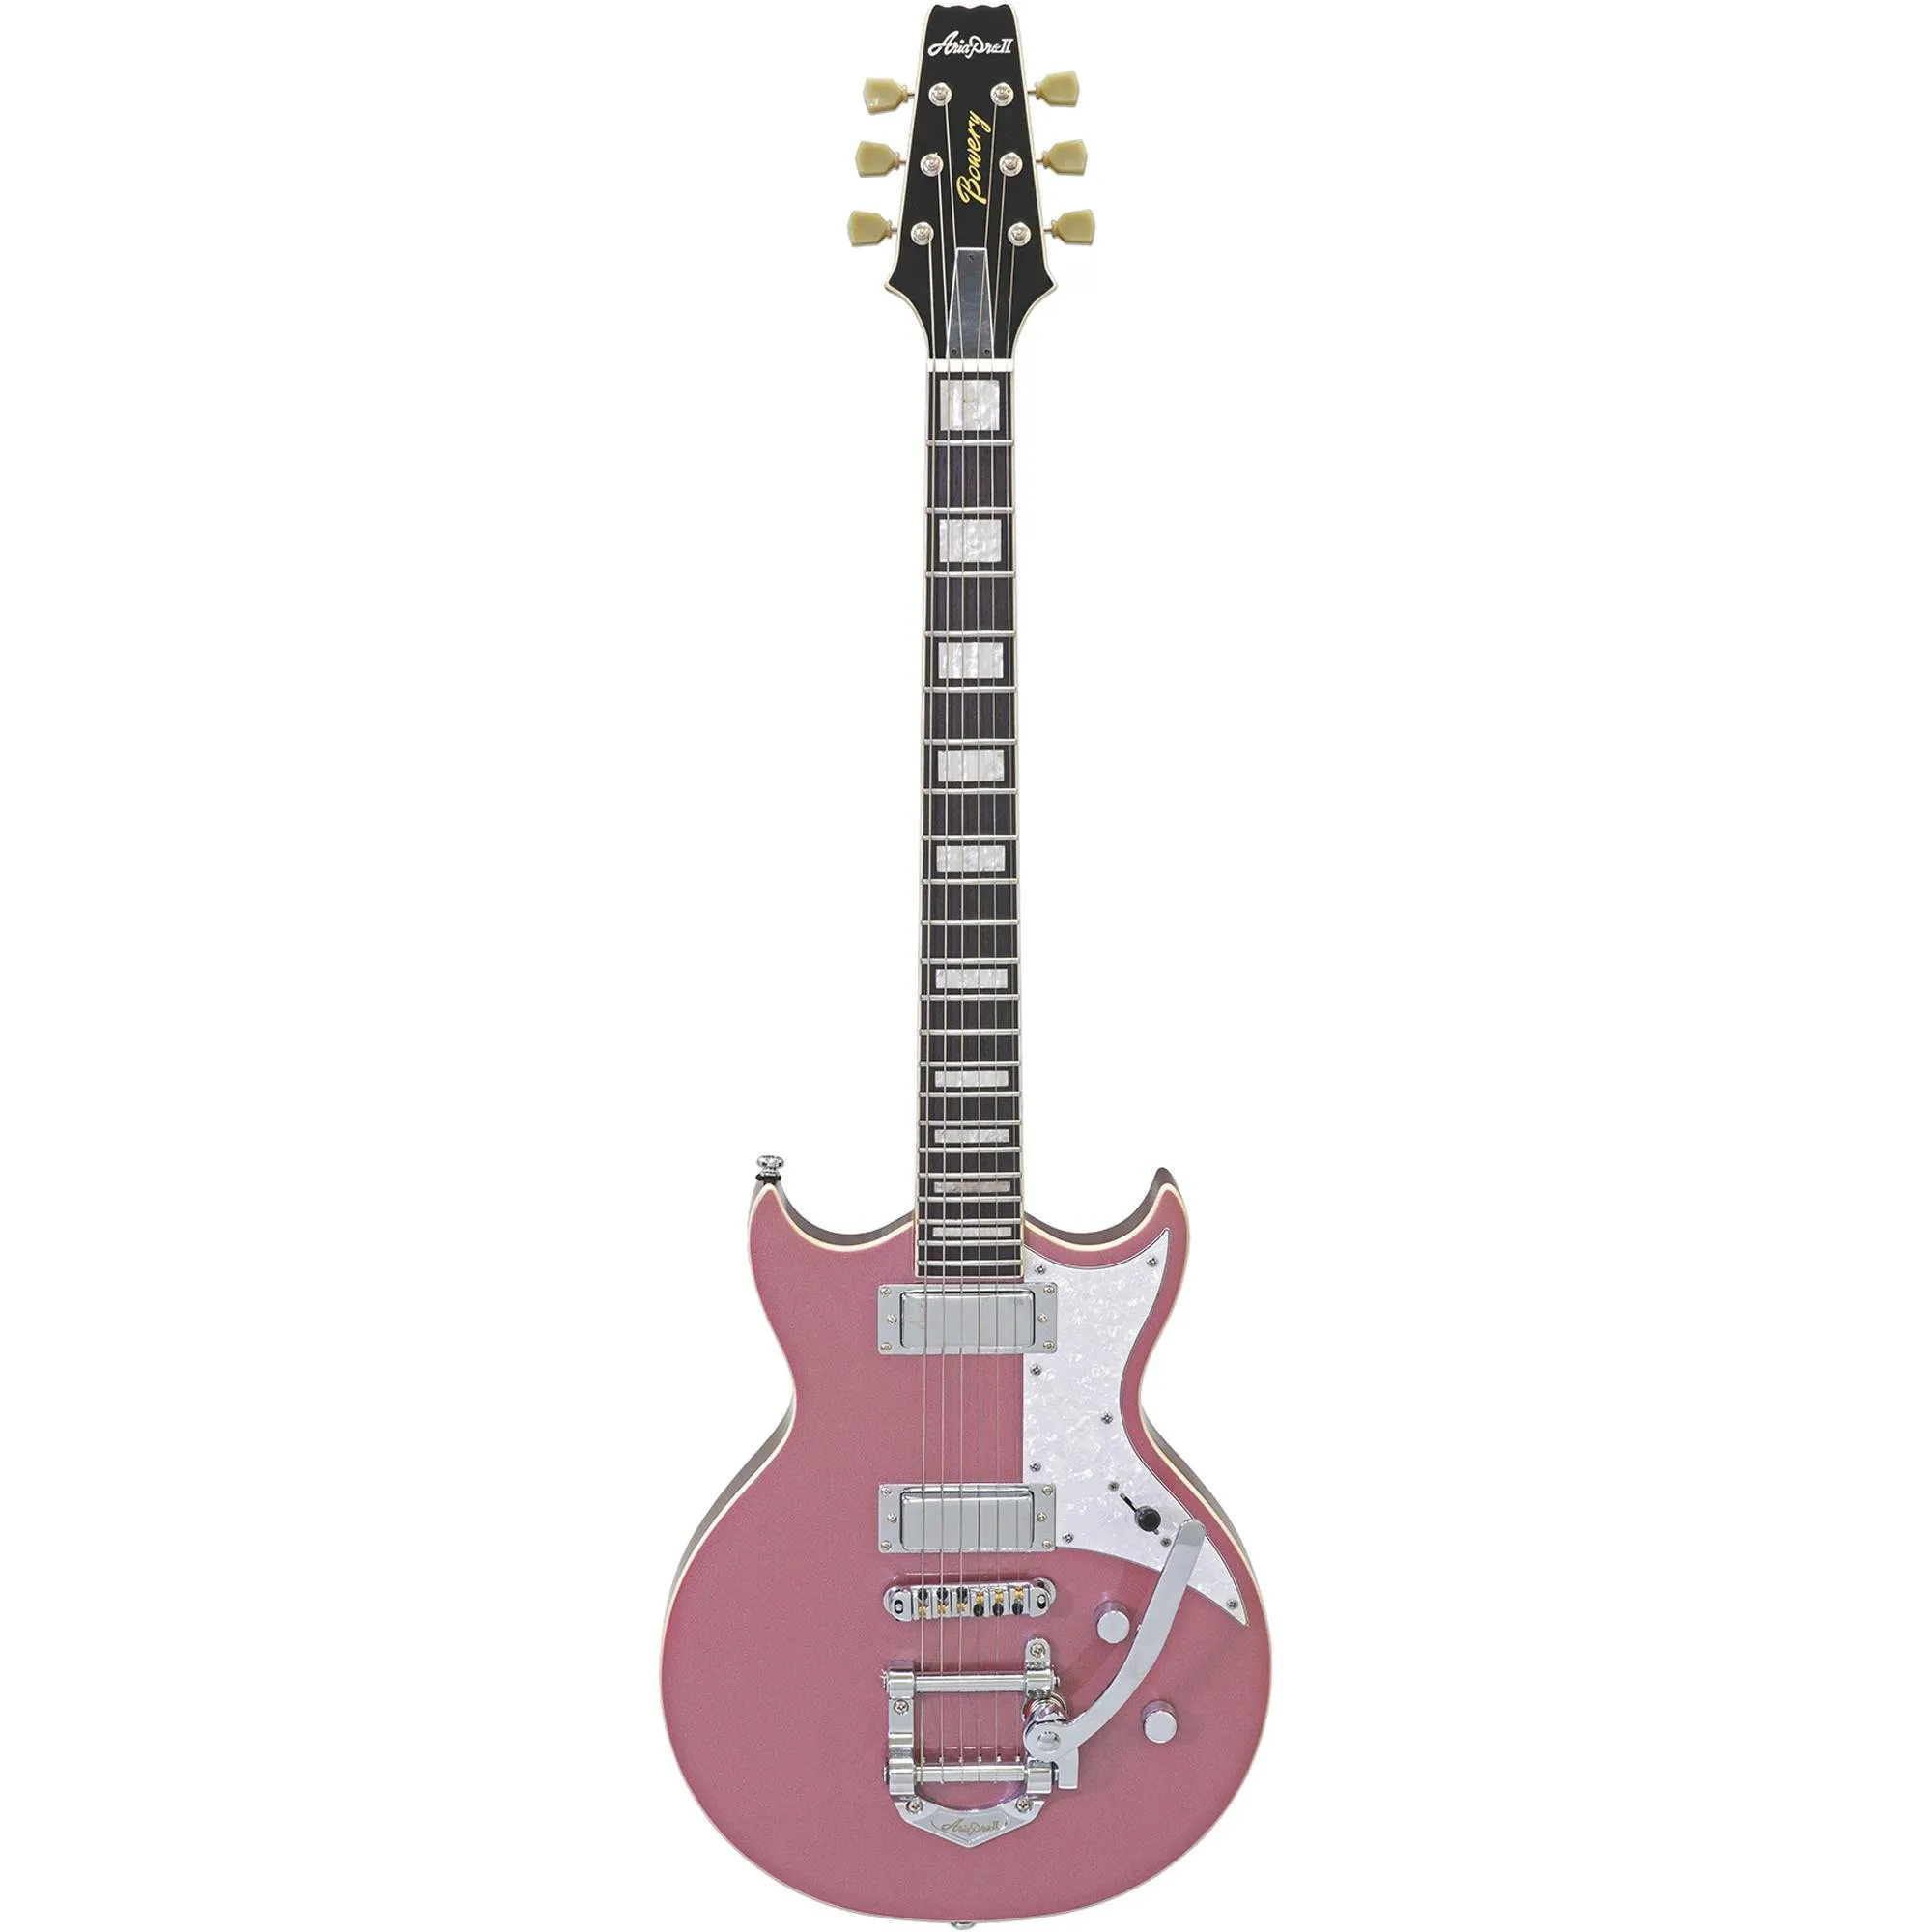 Guitarra Aria Pro II 212-MK2 Bowery Cadillac Pink por 5.053,66 à vista no boleto/pix ou parcele em até 12x sem juros. Compre na loja Aria!